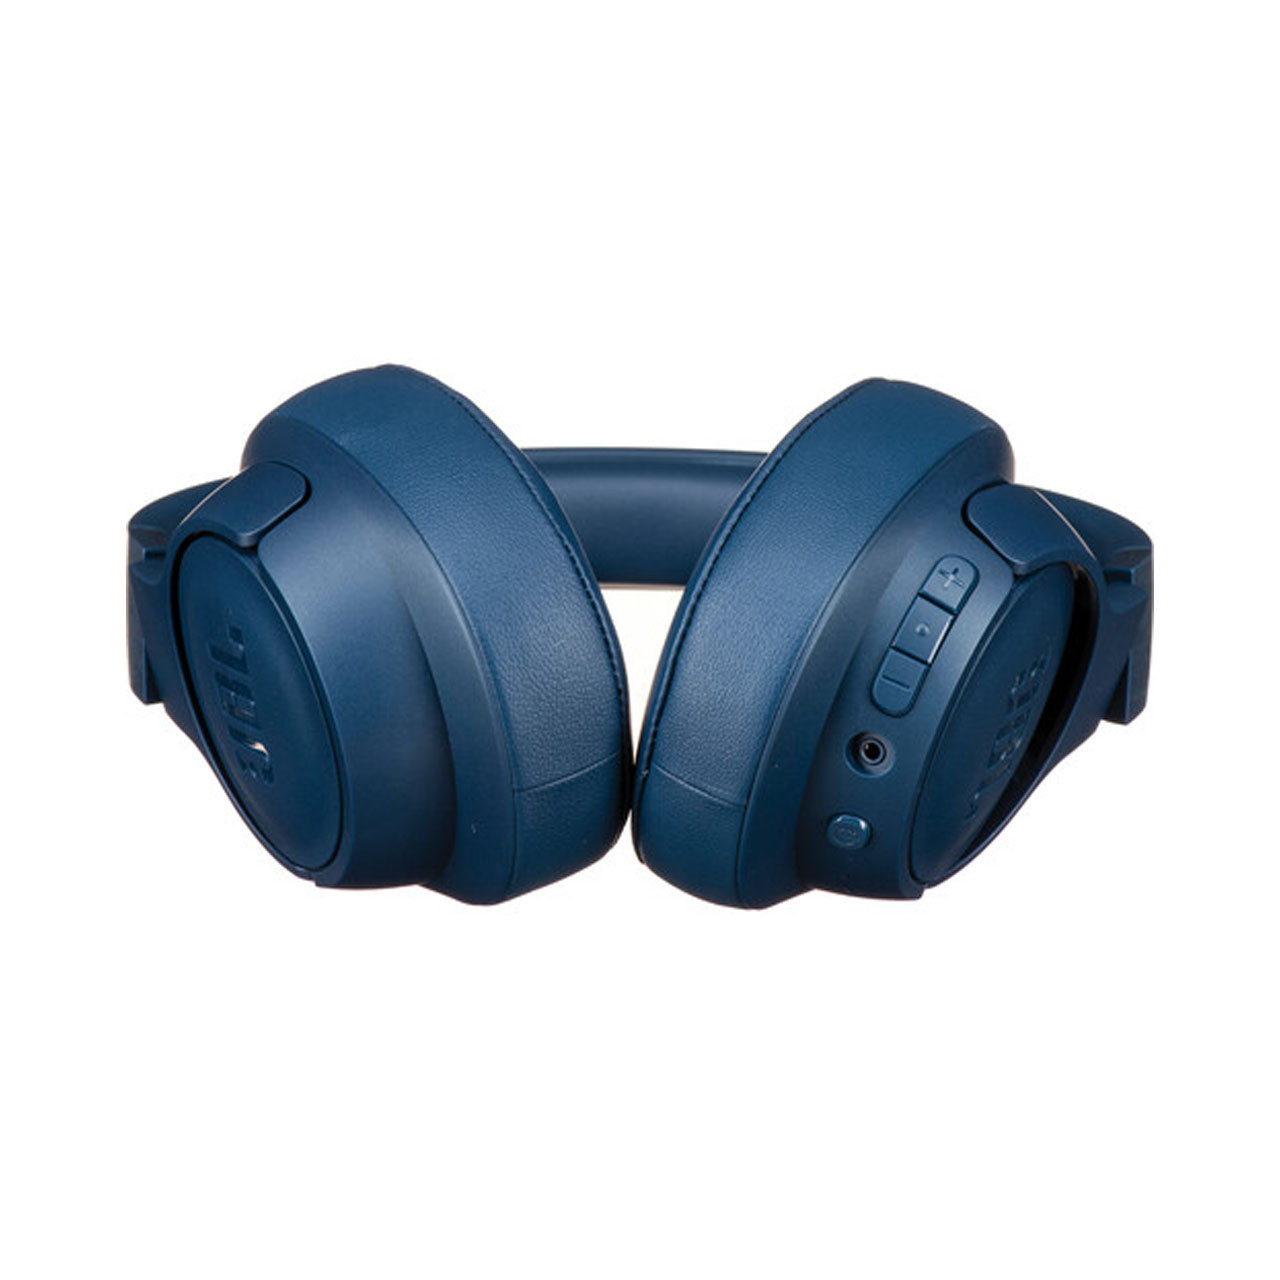 JBL Tune 710BT Wireless Over-Ear Headphones (Blue)